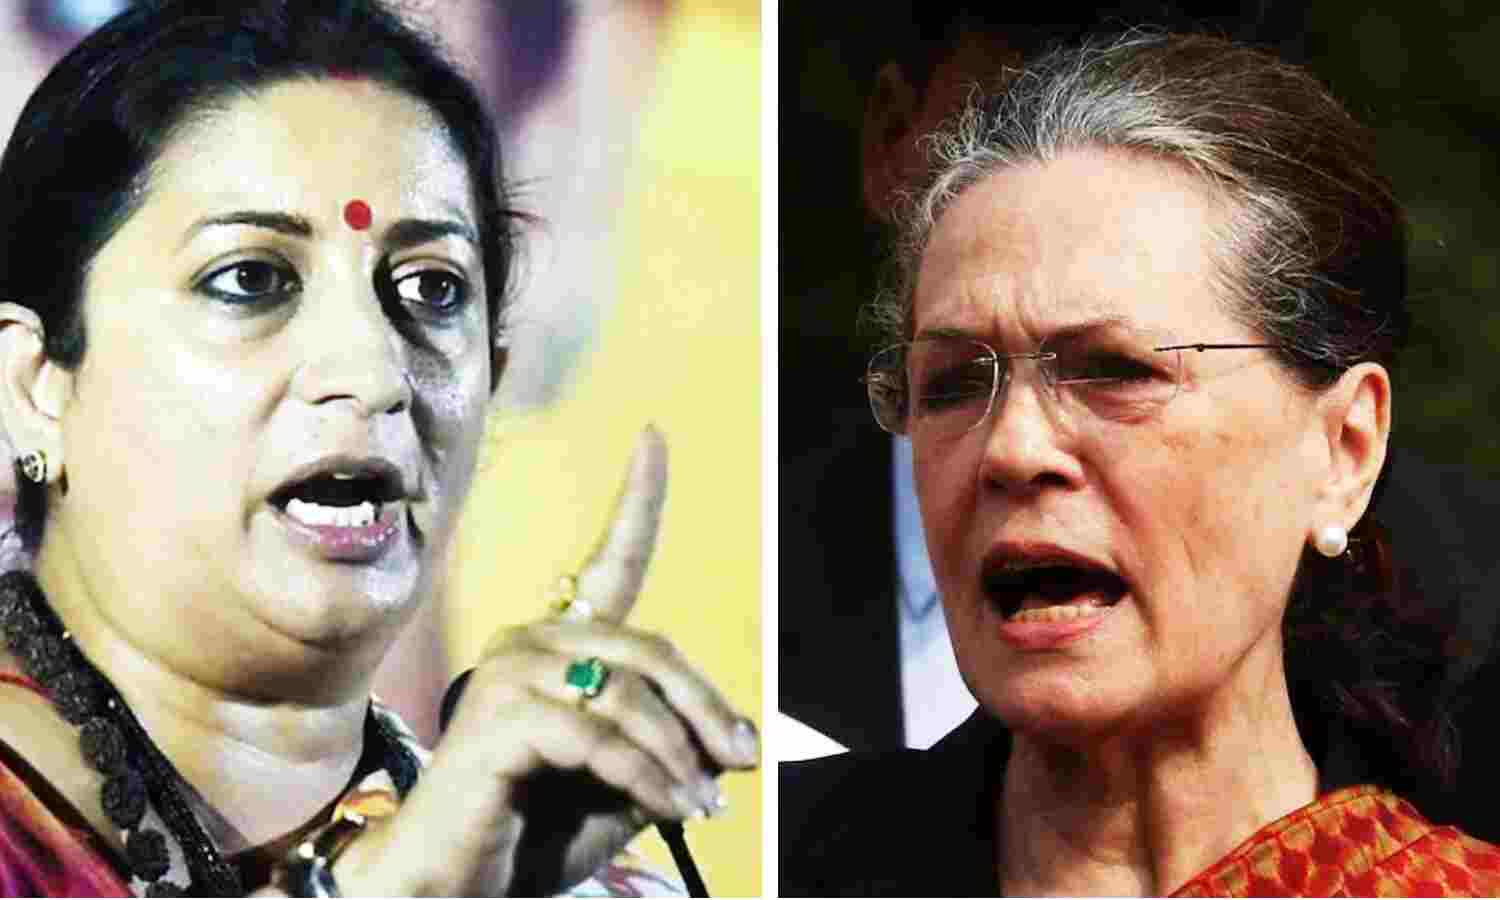 Smriti Irani vs Sonia Gandhi : सोनिया गांधी और स्मृति ईरानी के बीच बहस के बाद की इनसाइड स्टोरी, क्या है नेताओं के अलग-अलग दावे?